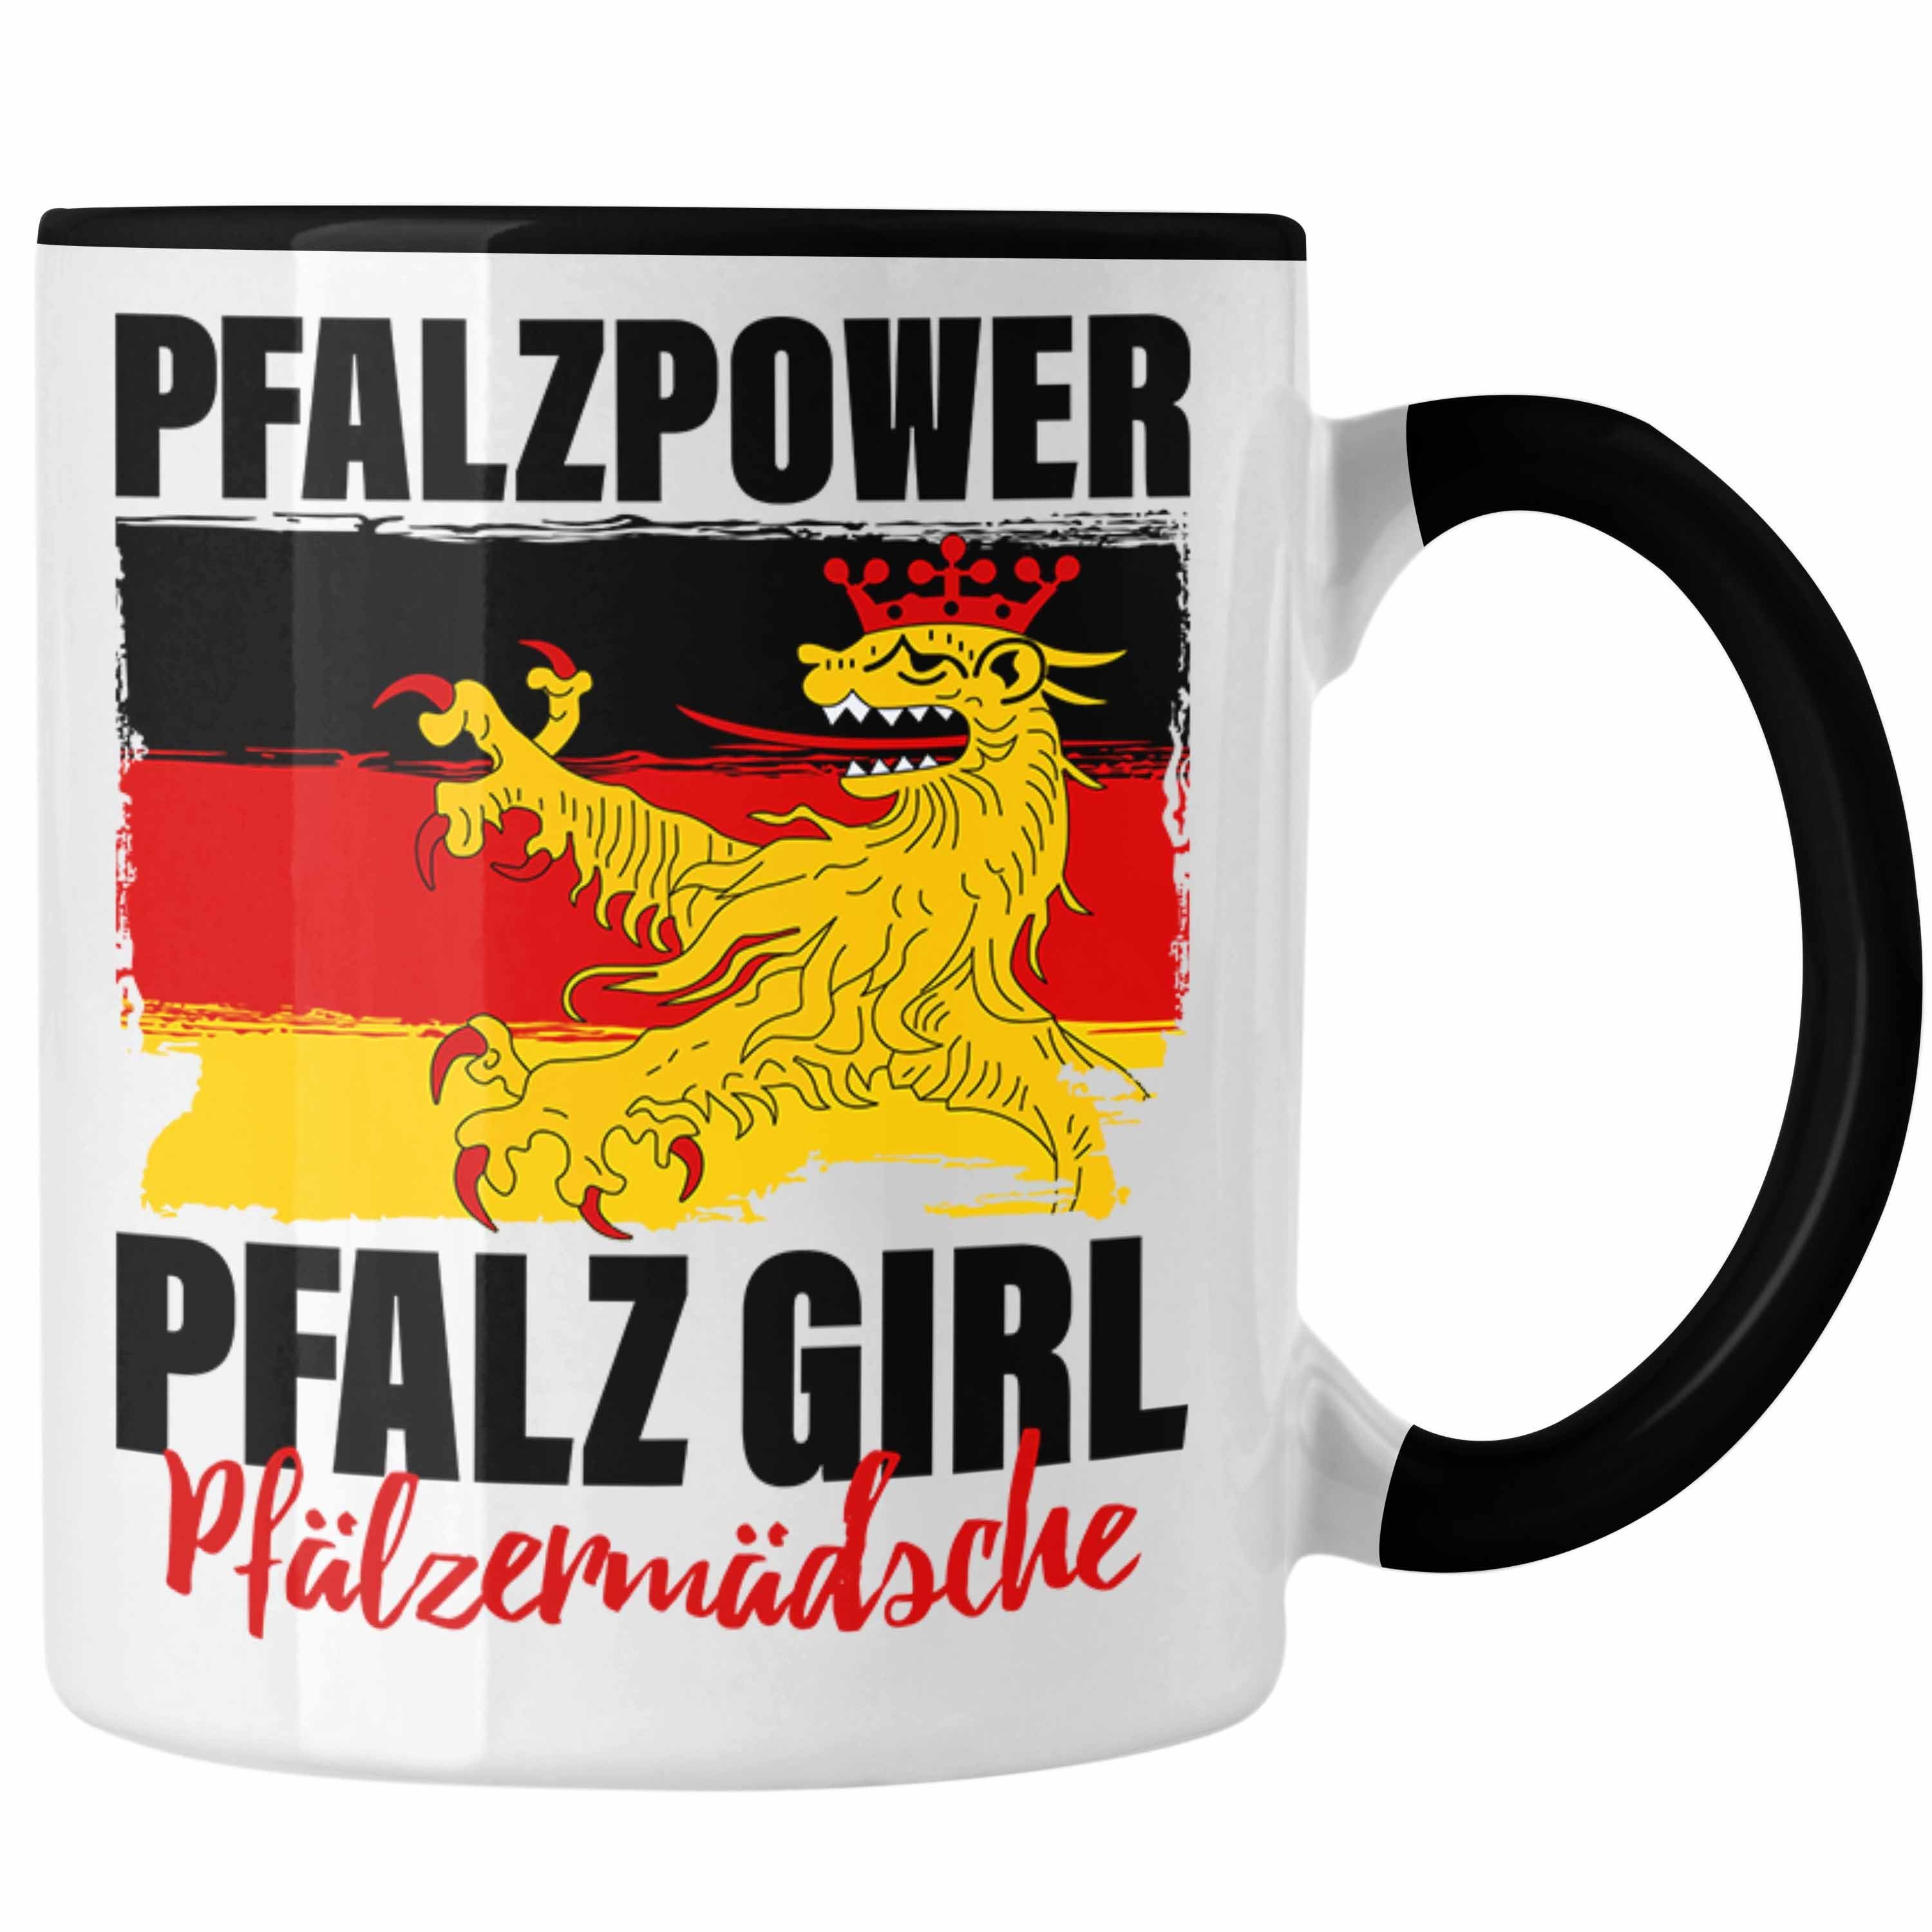 Trendation Tasse Girl Pfalz Geschenk Pfalzmädsche Pfalzpower Schwarz Tasse Frauen